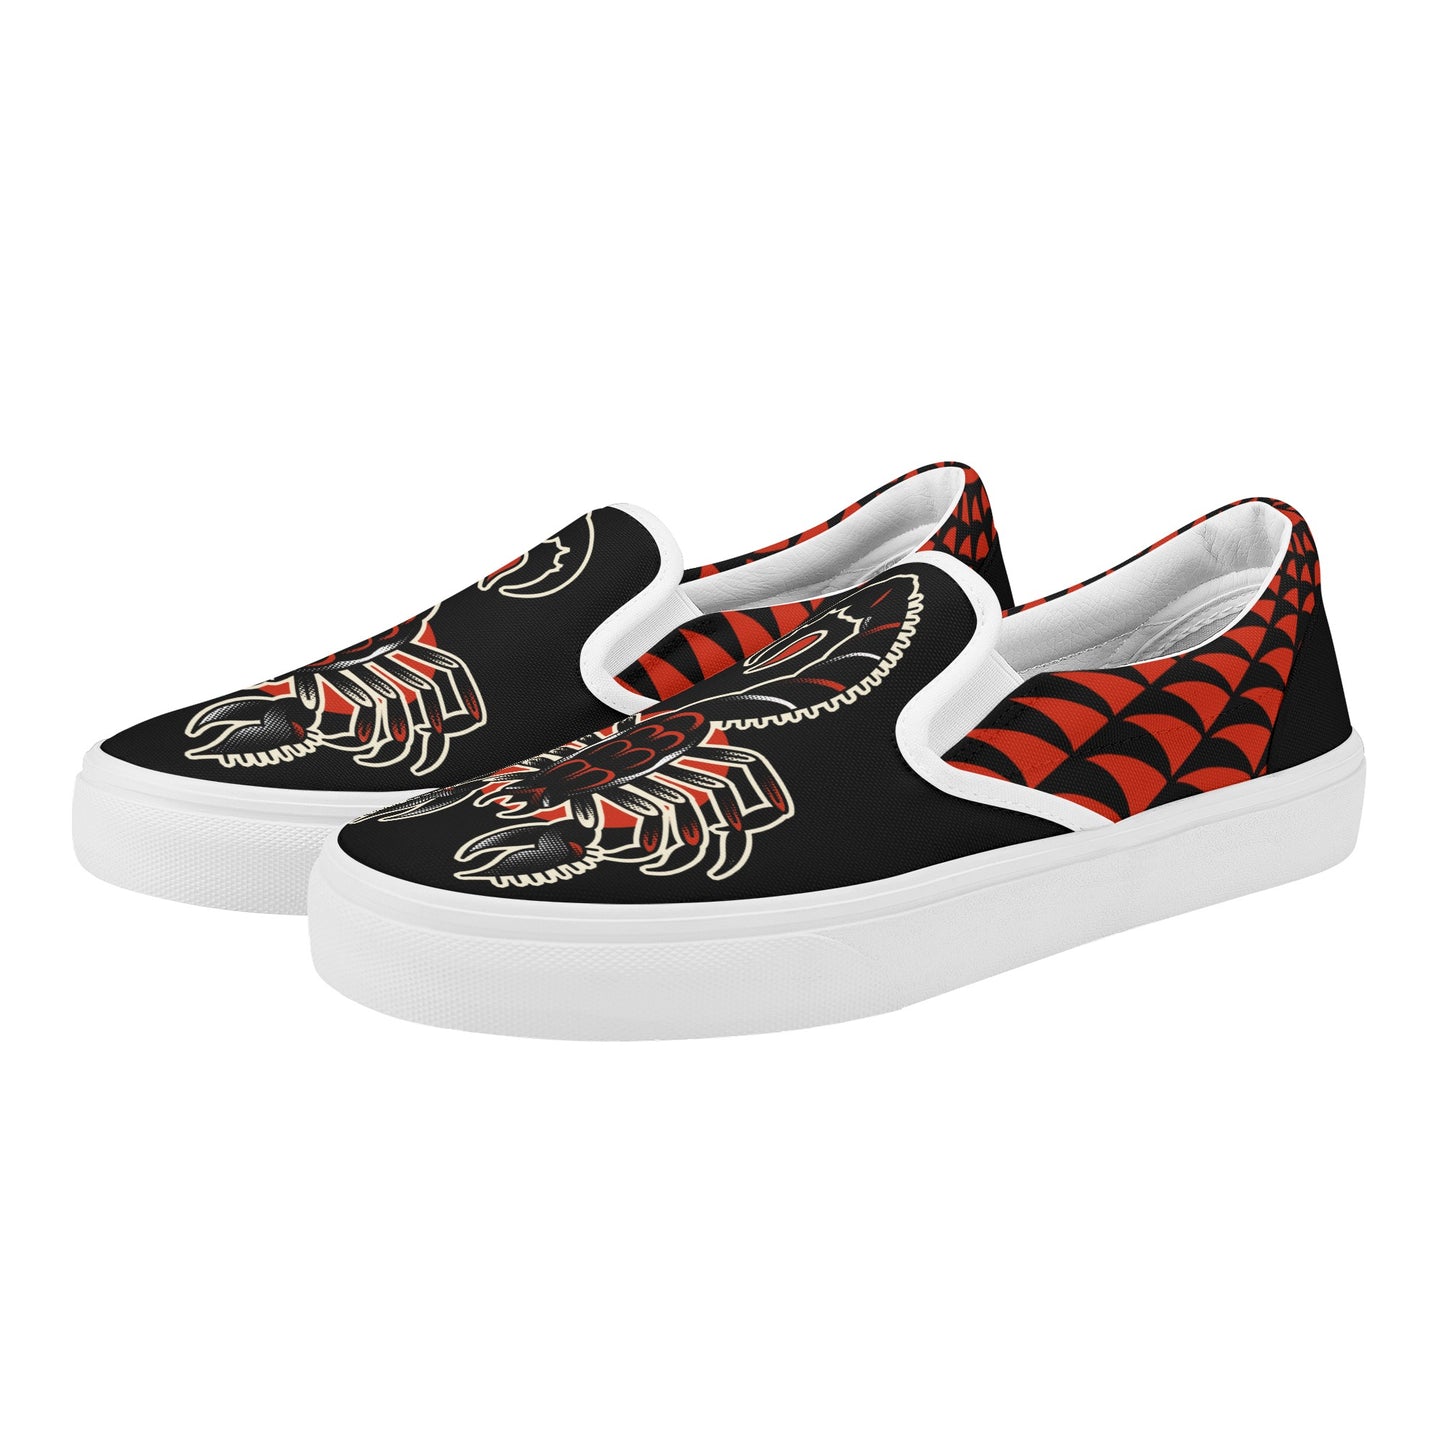 Zapatos sin cordones de skate Scorpion tradicionales